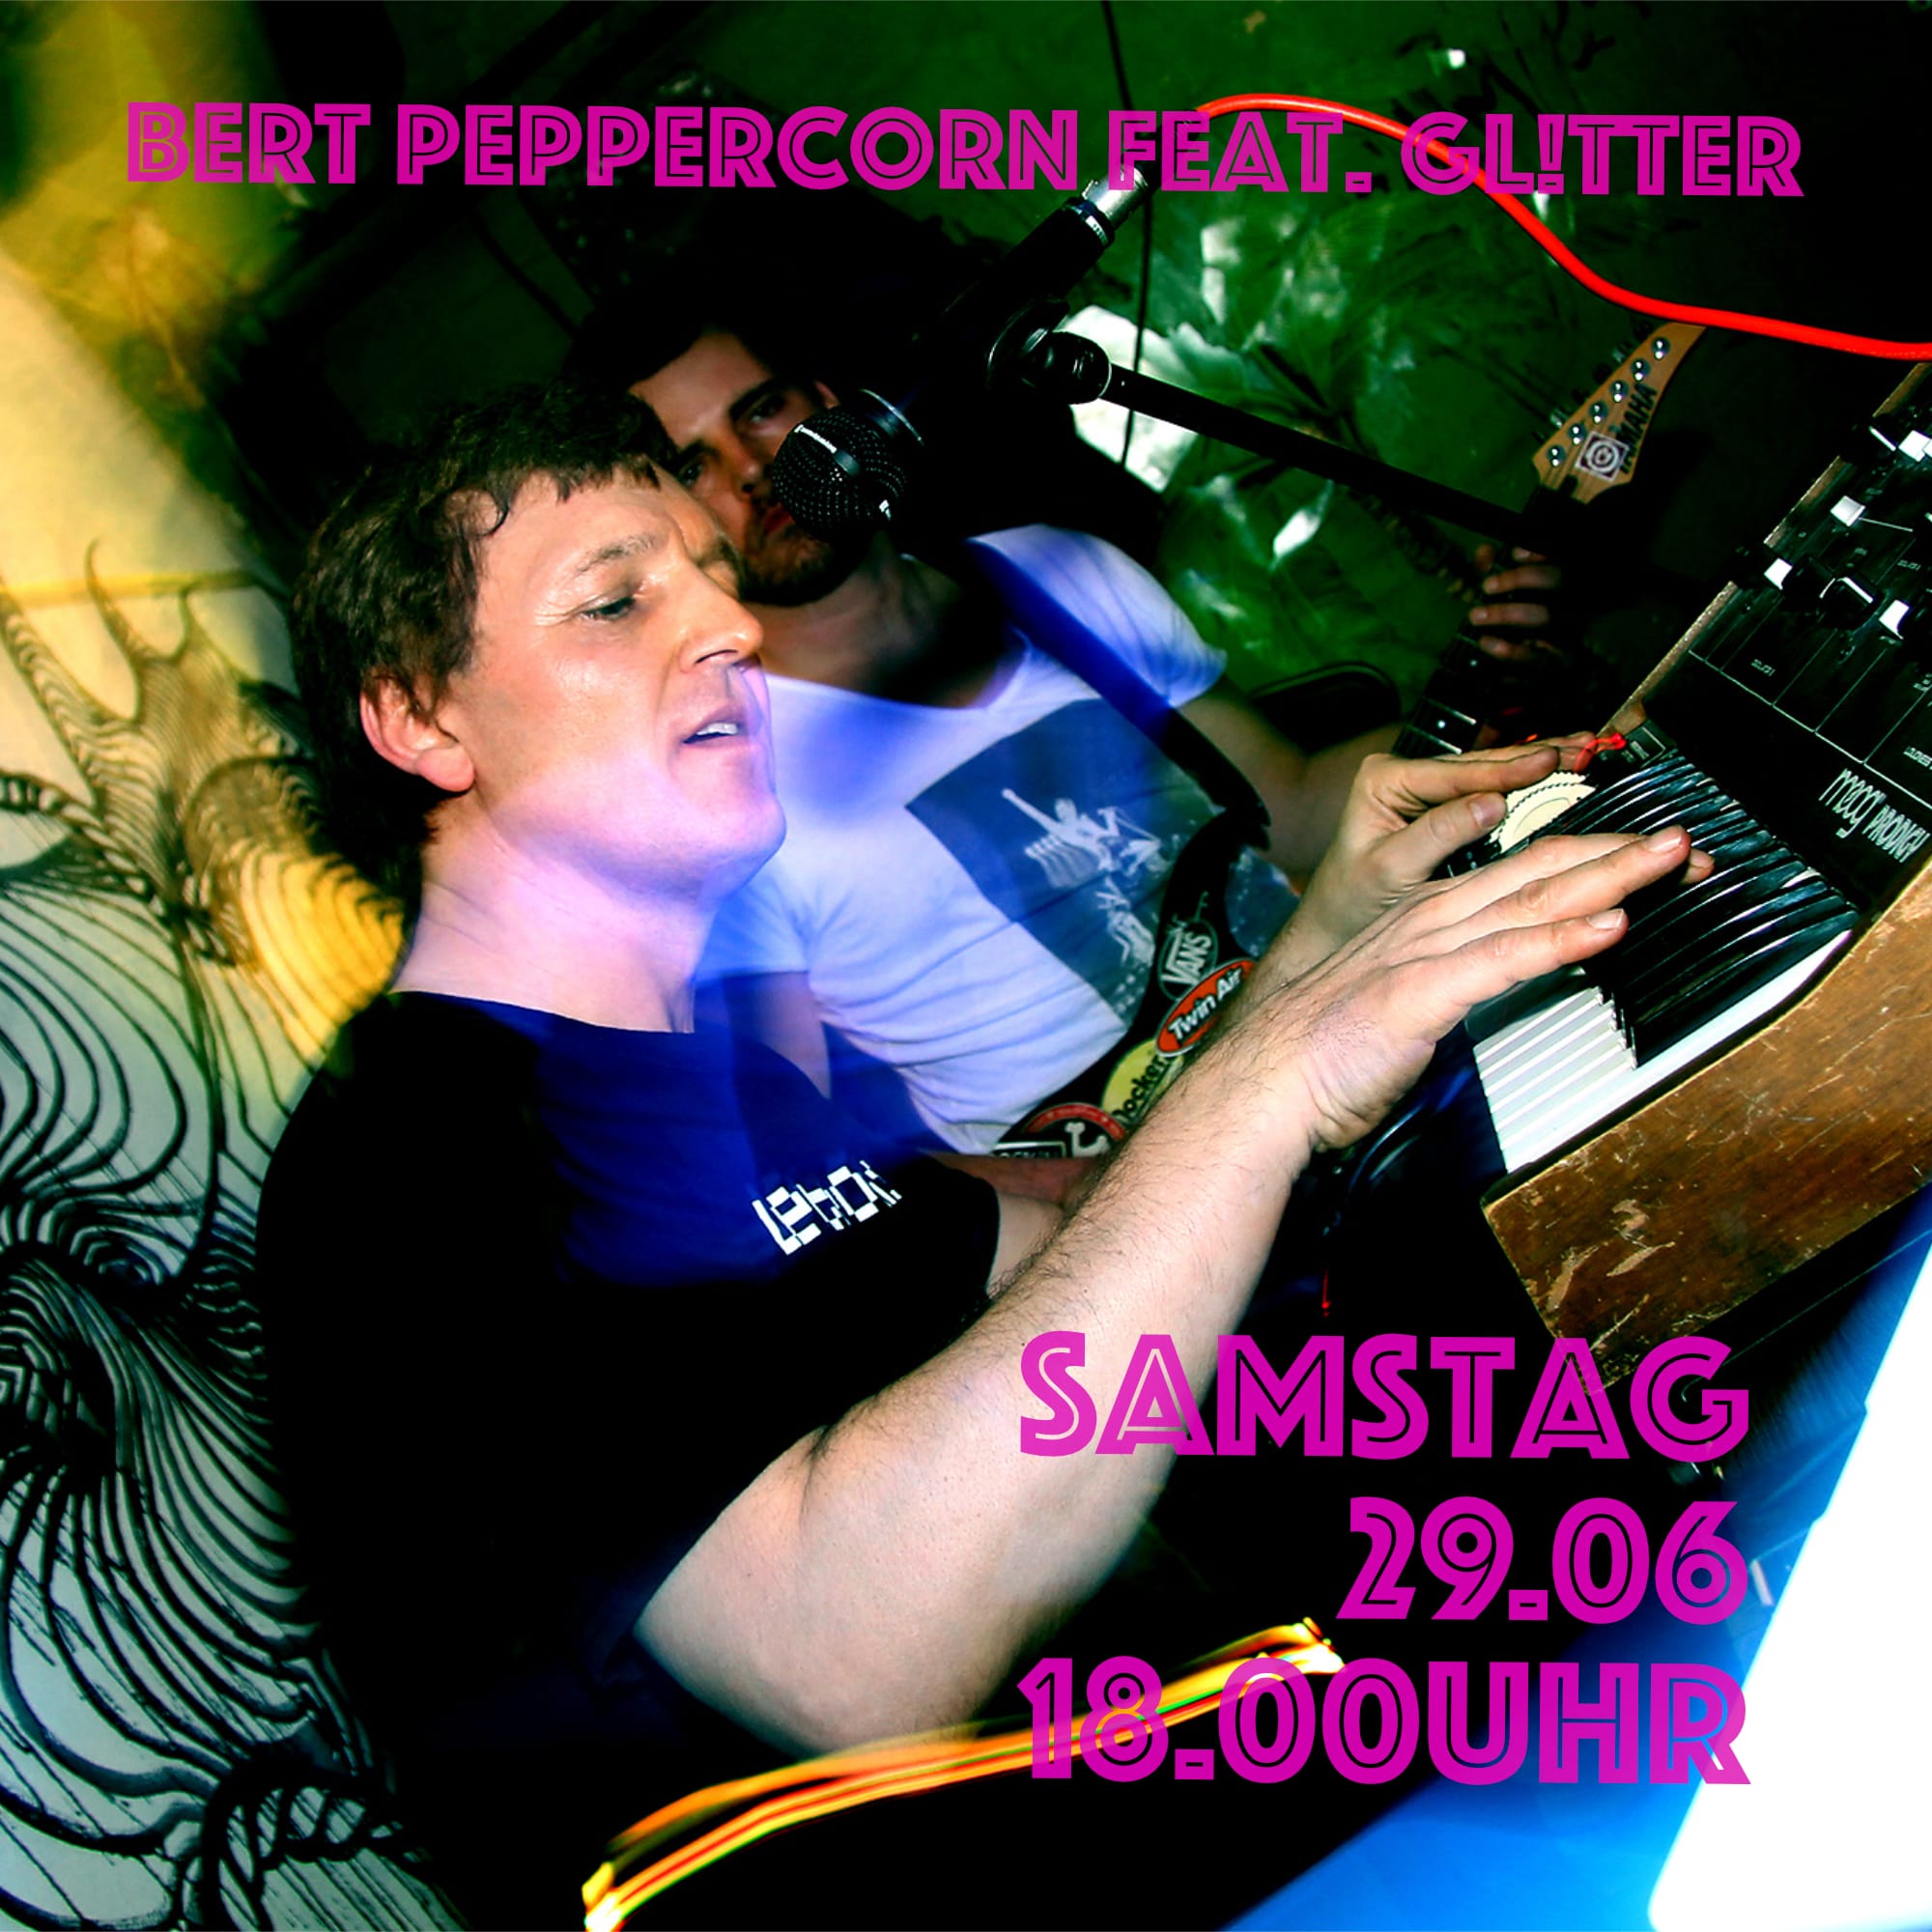 Bert Peppercorn feat. Gl!tter